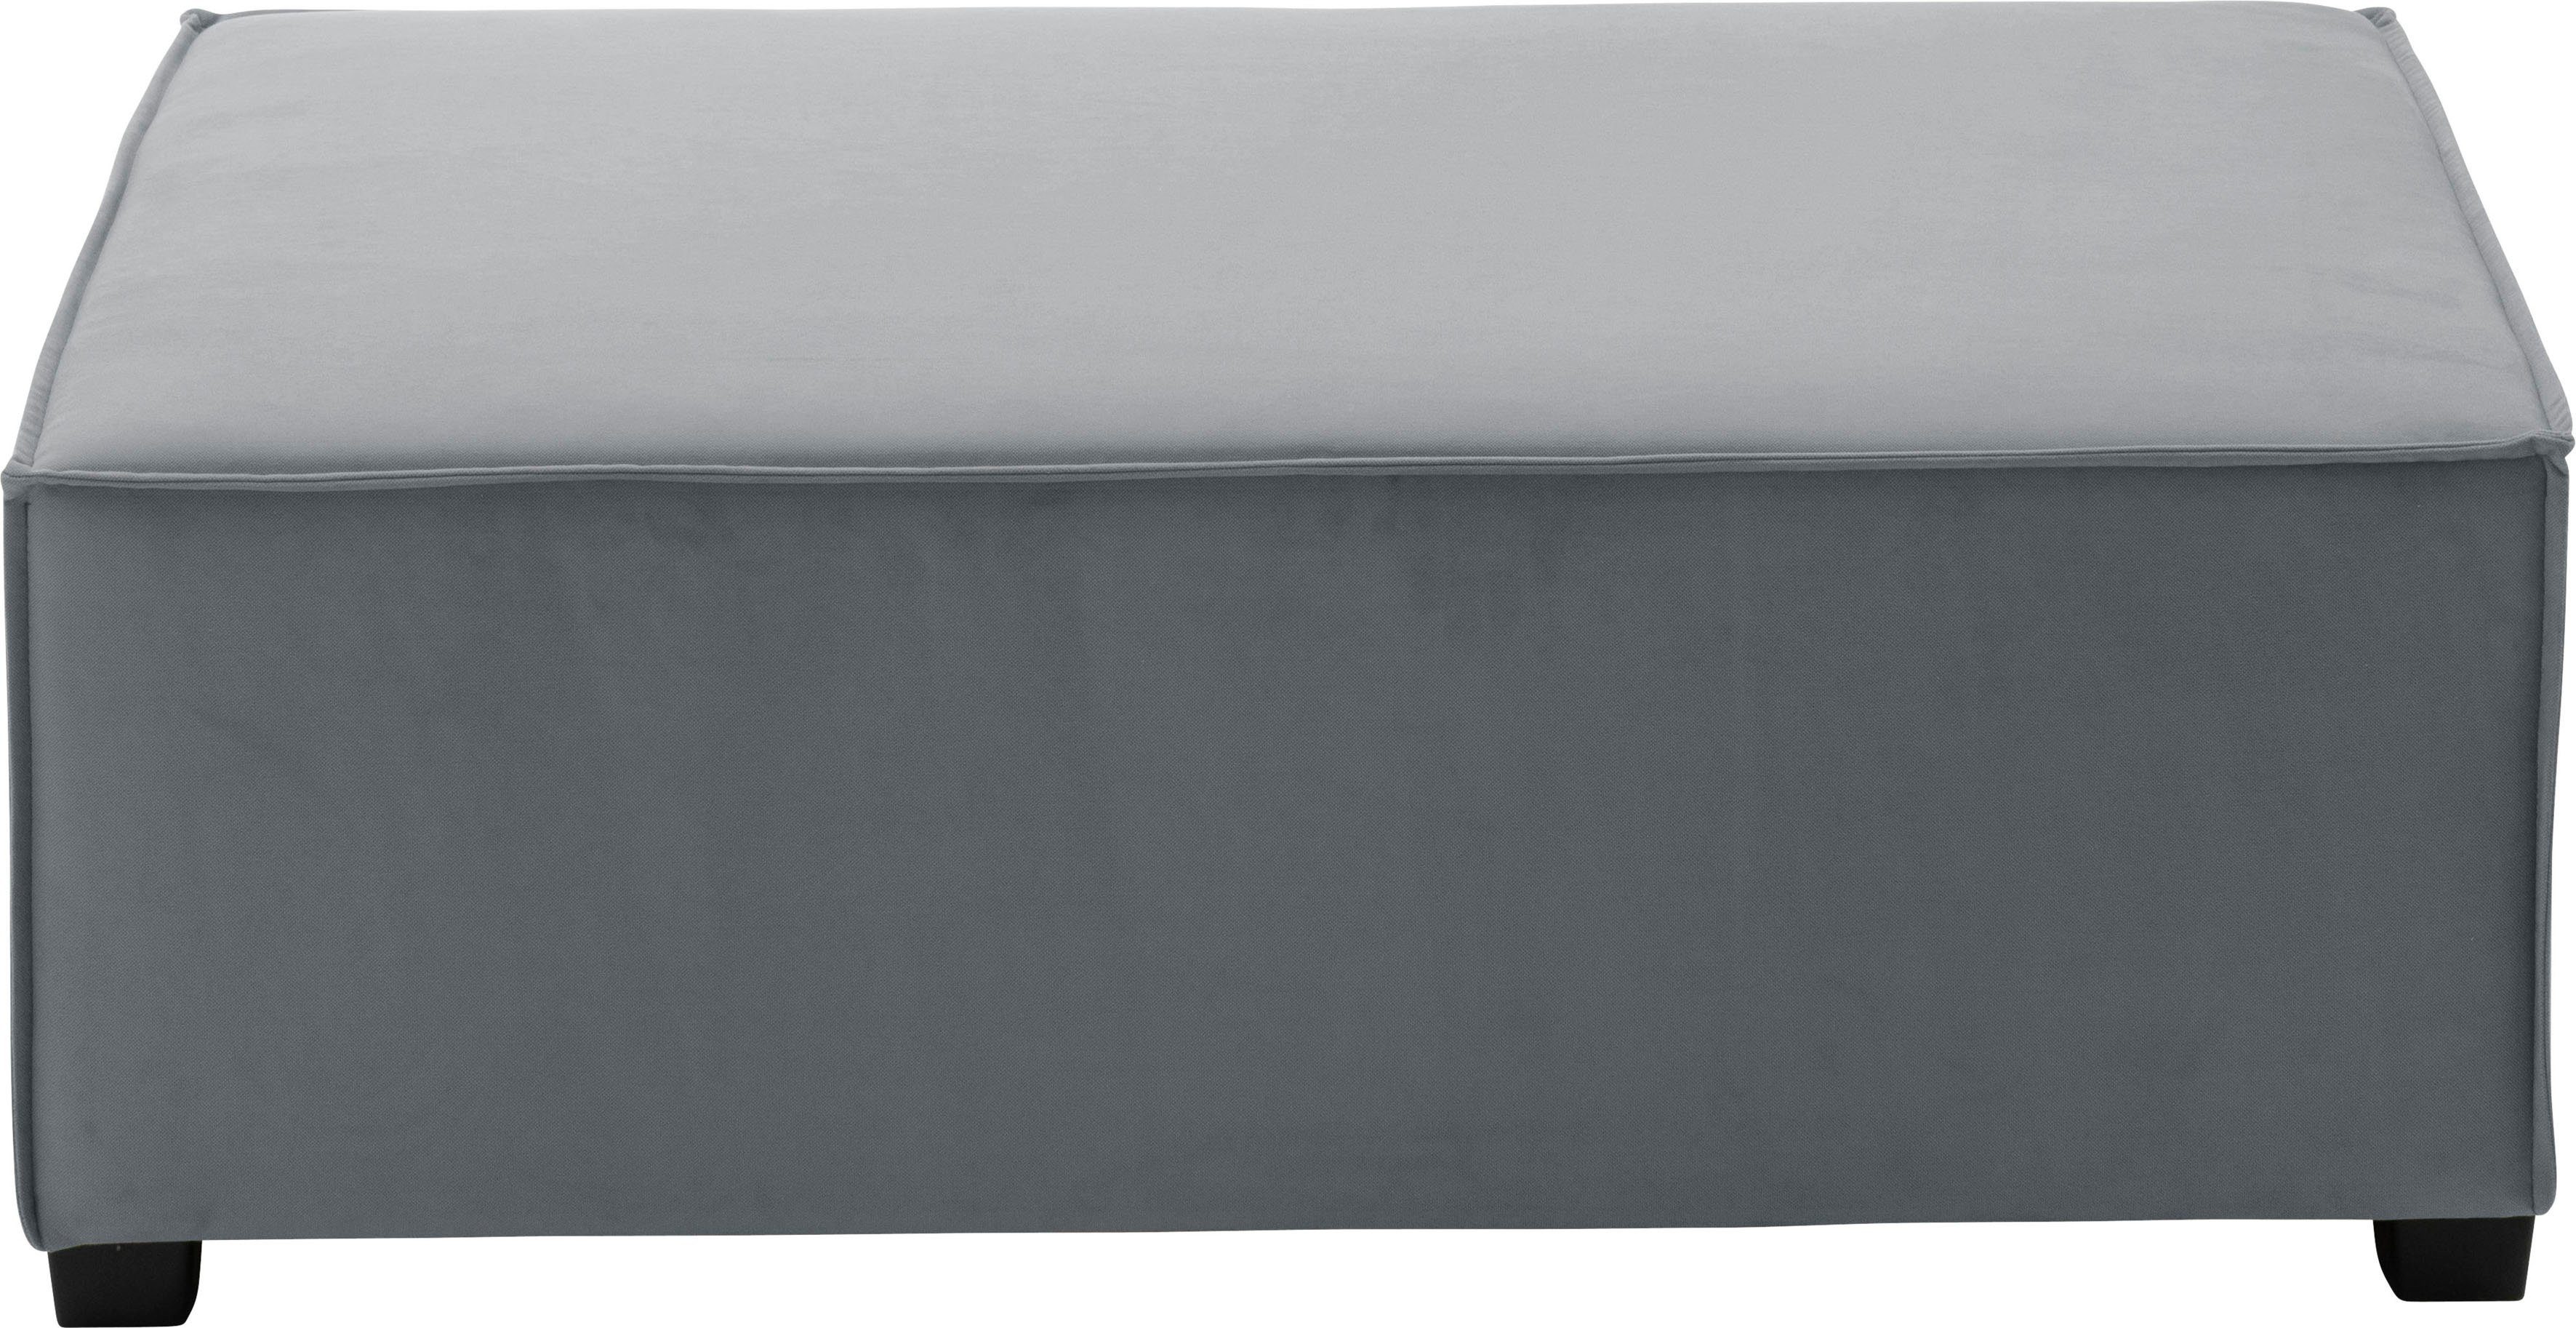 Max Winzer® Sofaelement Einzelelement kombinierbar individuell cm, 120/90/42 MOVE, grau